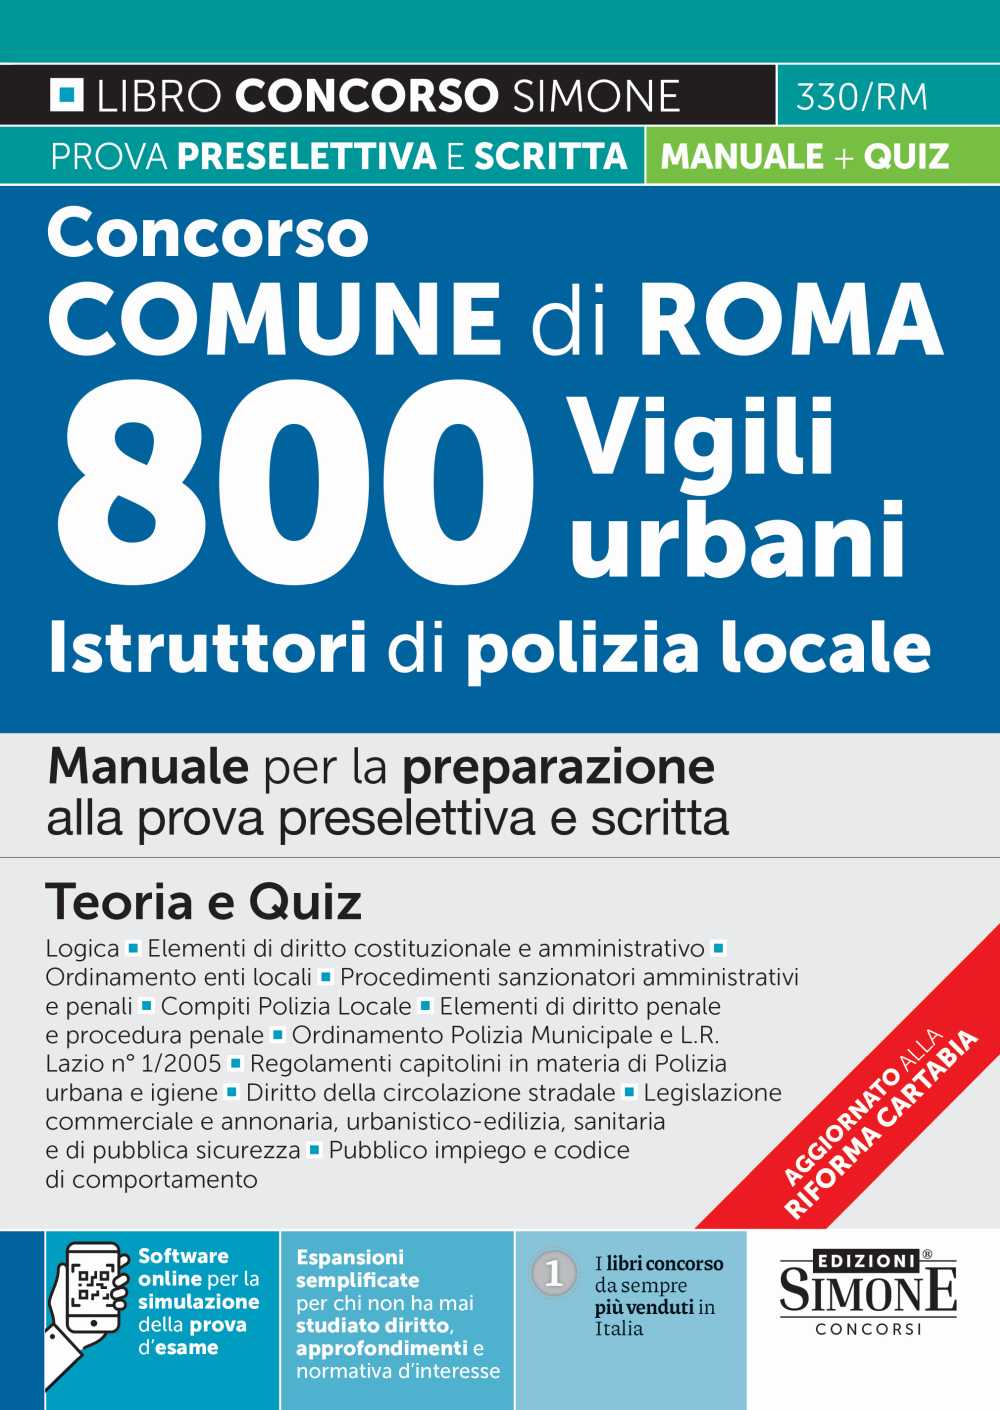 Concorso Comune di Roma 800 Vigili urbani Istruttori di polizia locale - Manuale - 330/RM